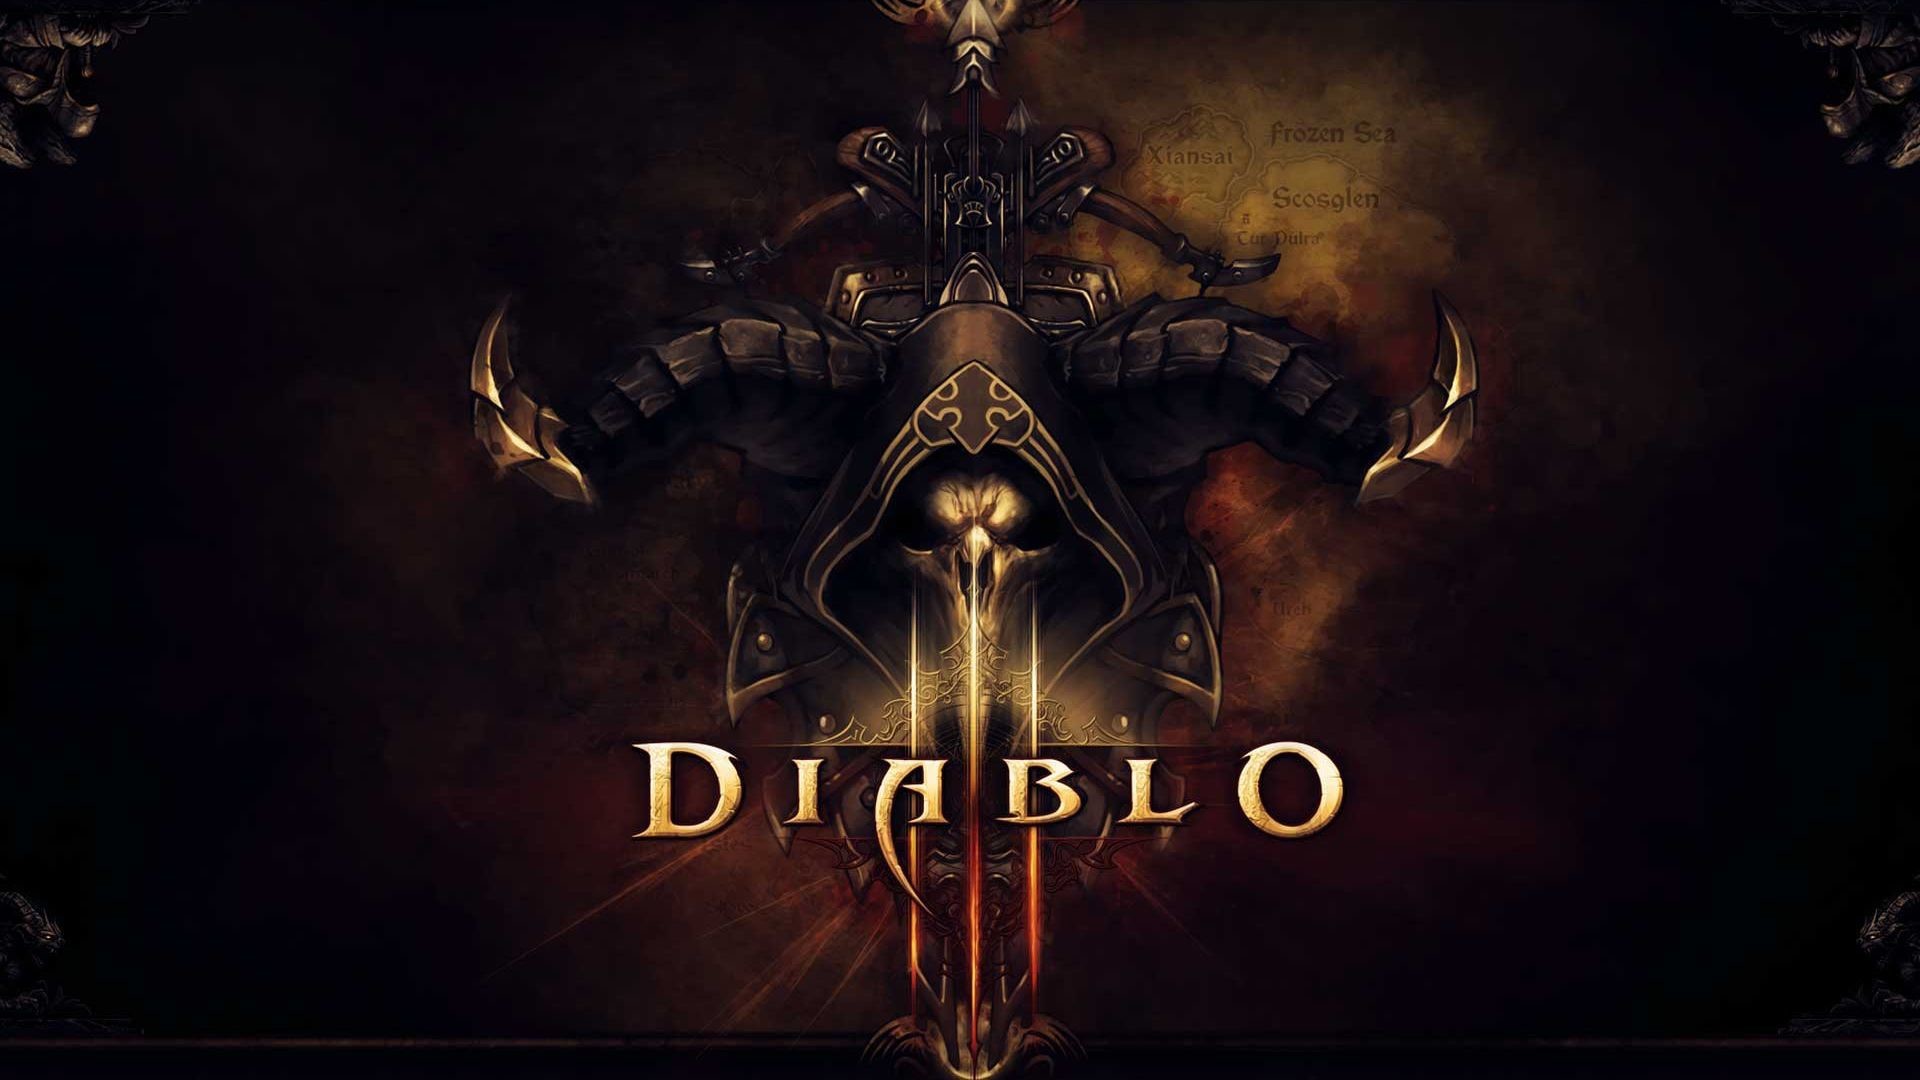 1920x1080 Diablo III Demon Hunter Artwork HD Wallpaper in Full HD from the Video  Games category.